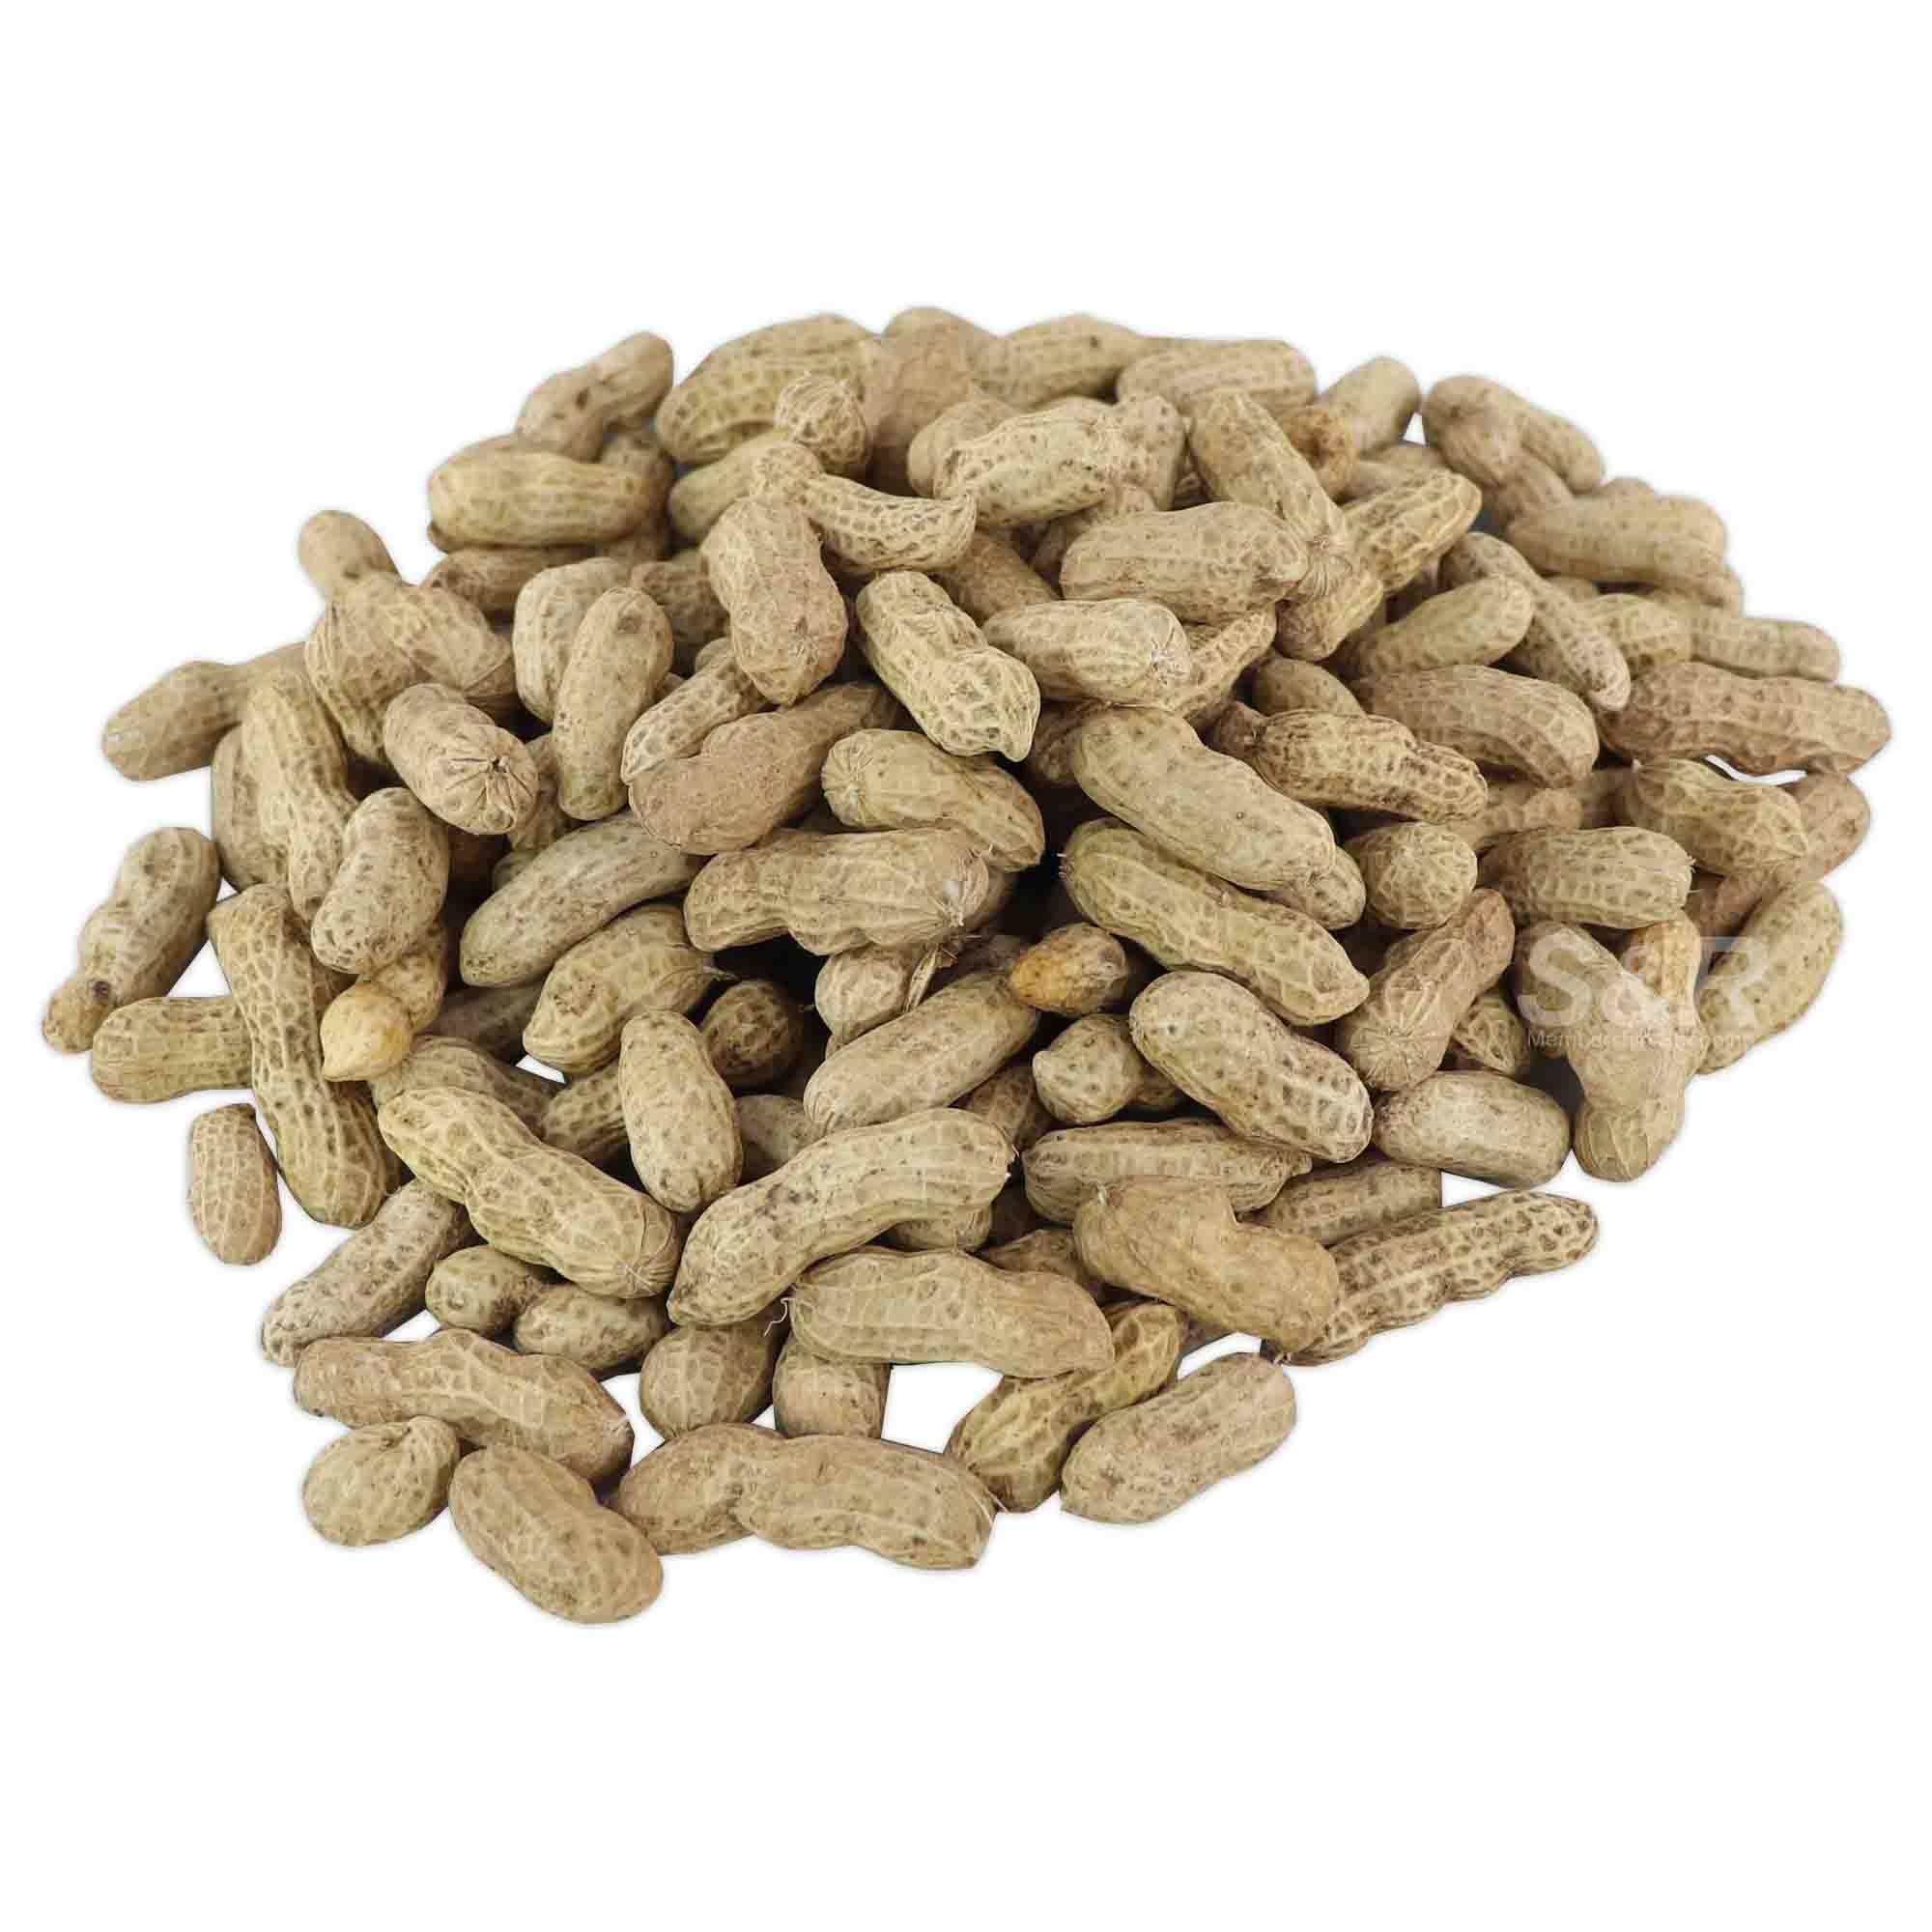 S&R Fresh Peanuts approx. 1kg